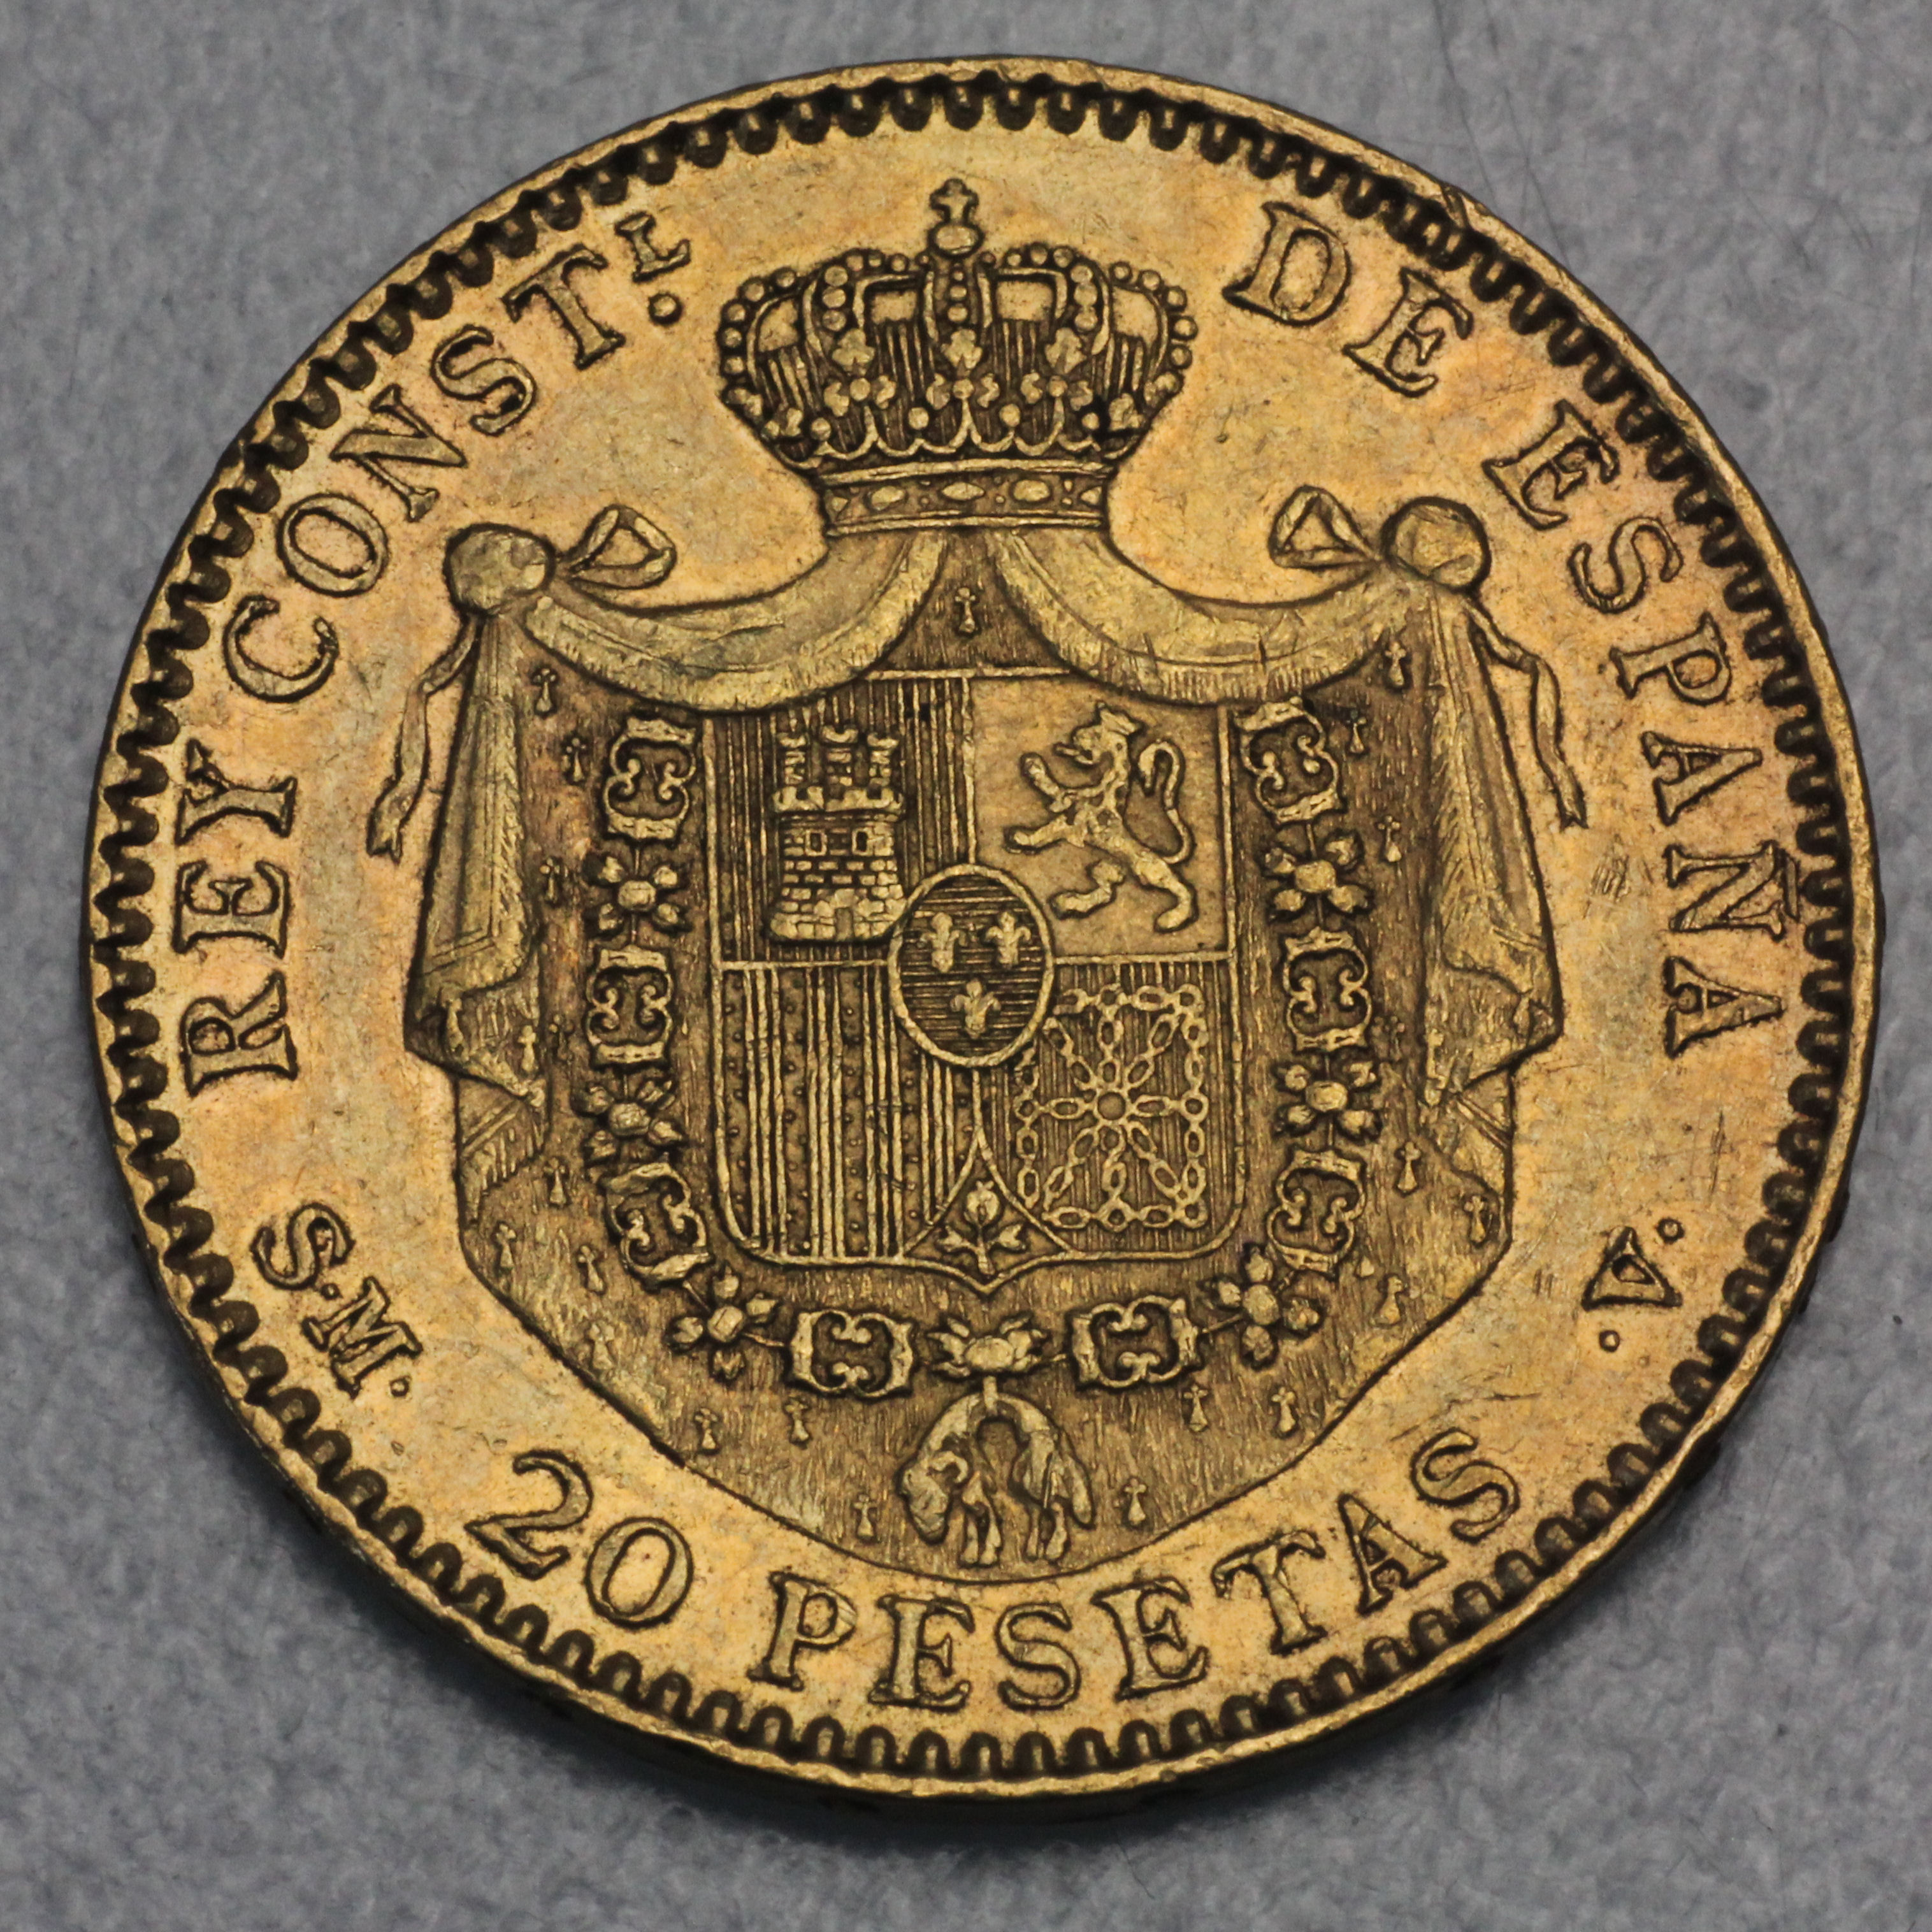 Perfekte Wahl Für Ihre Spardose Münze Inhaber Und Münzenalbum Hobby of Kings 10 Espana Spanien Münzen Peseten Peseta Céntimos Pre-Euro-münzen 1939-2001 